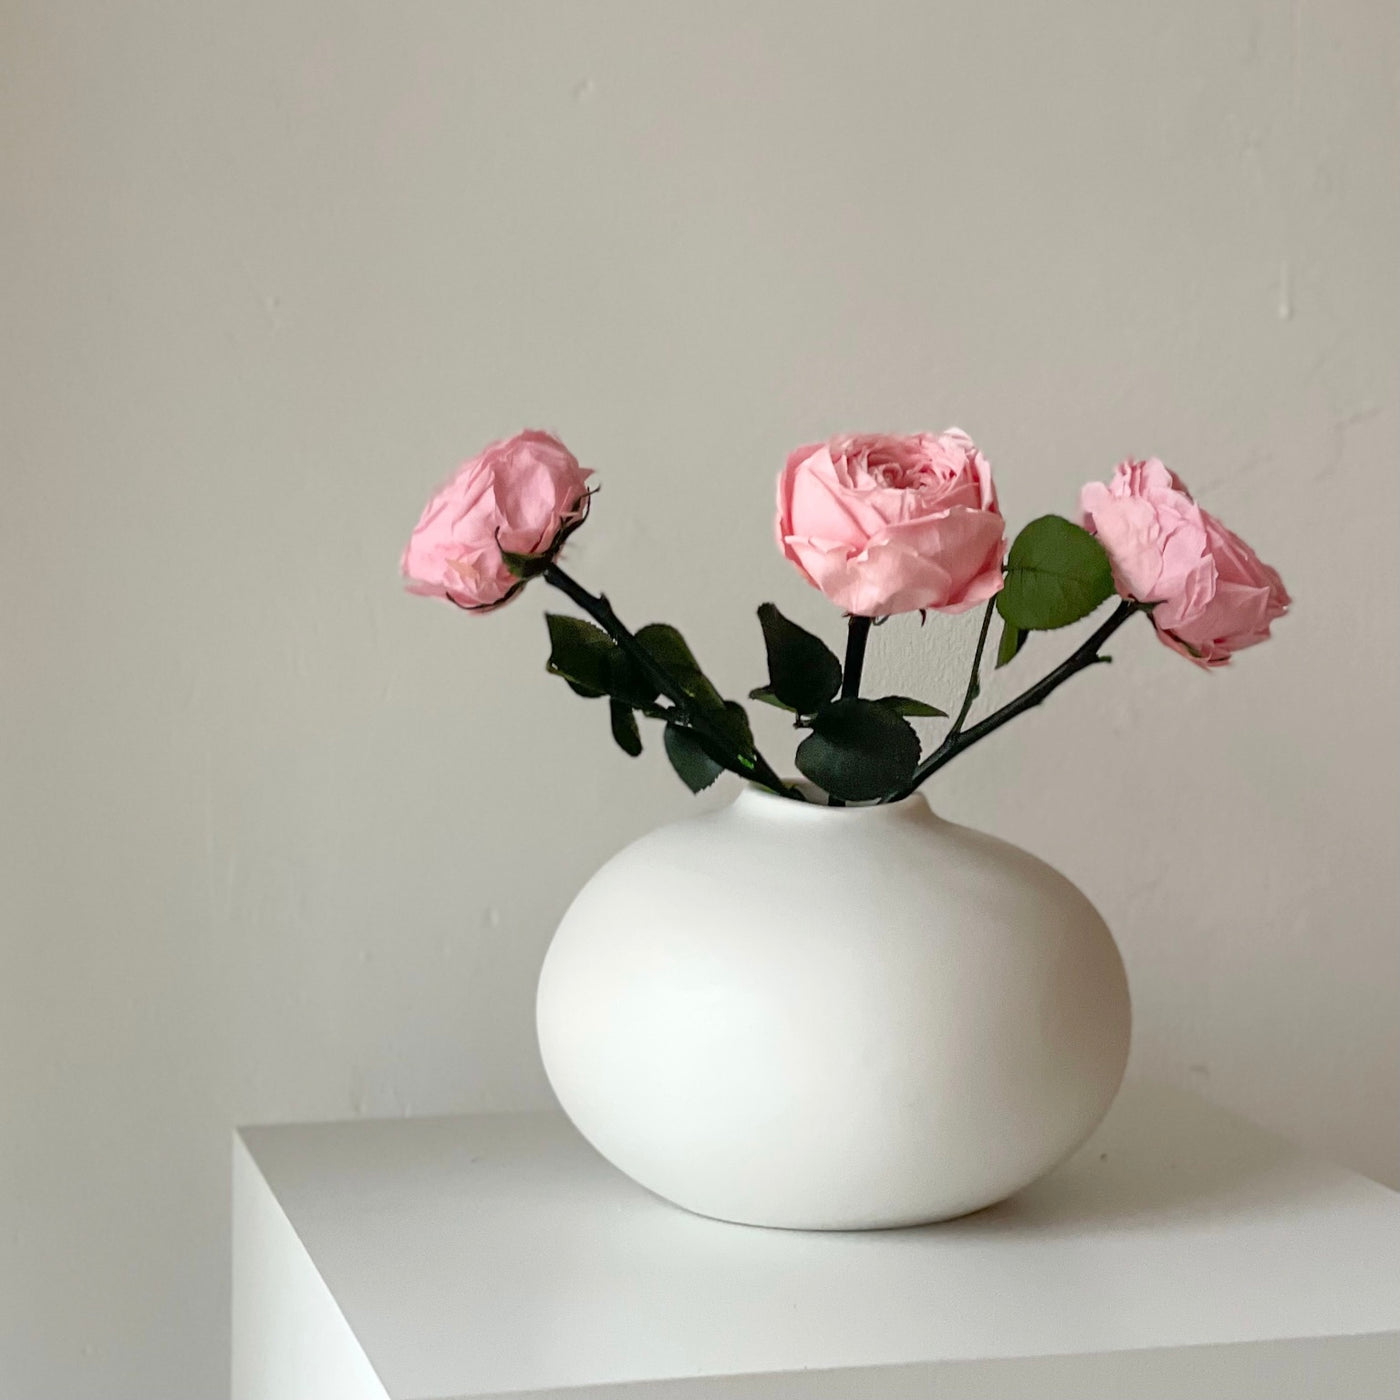 Konservierte englische Rose | 30 cm | weiss | rosa | edel | haltbar - Größe: 1x, 3x - Farbe: weiß, rosa